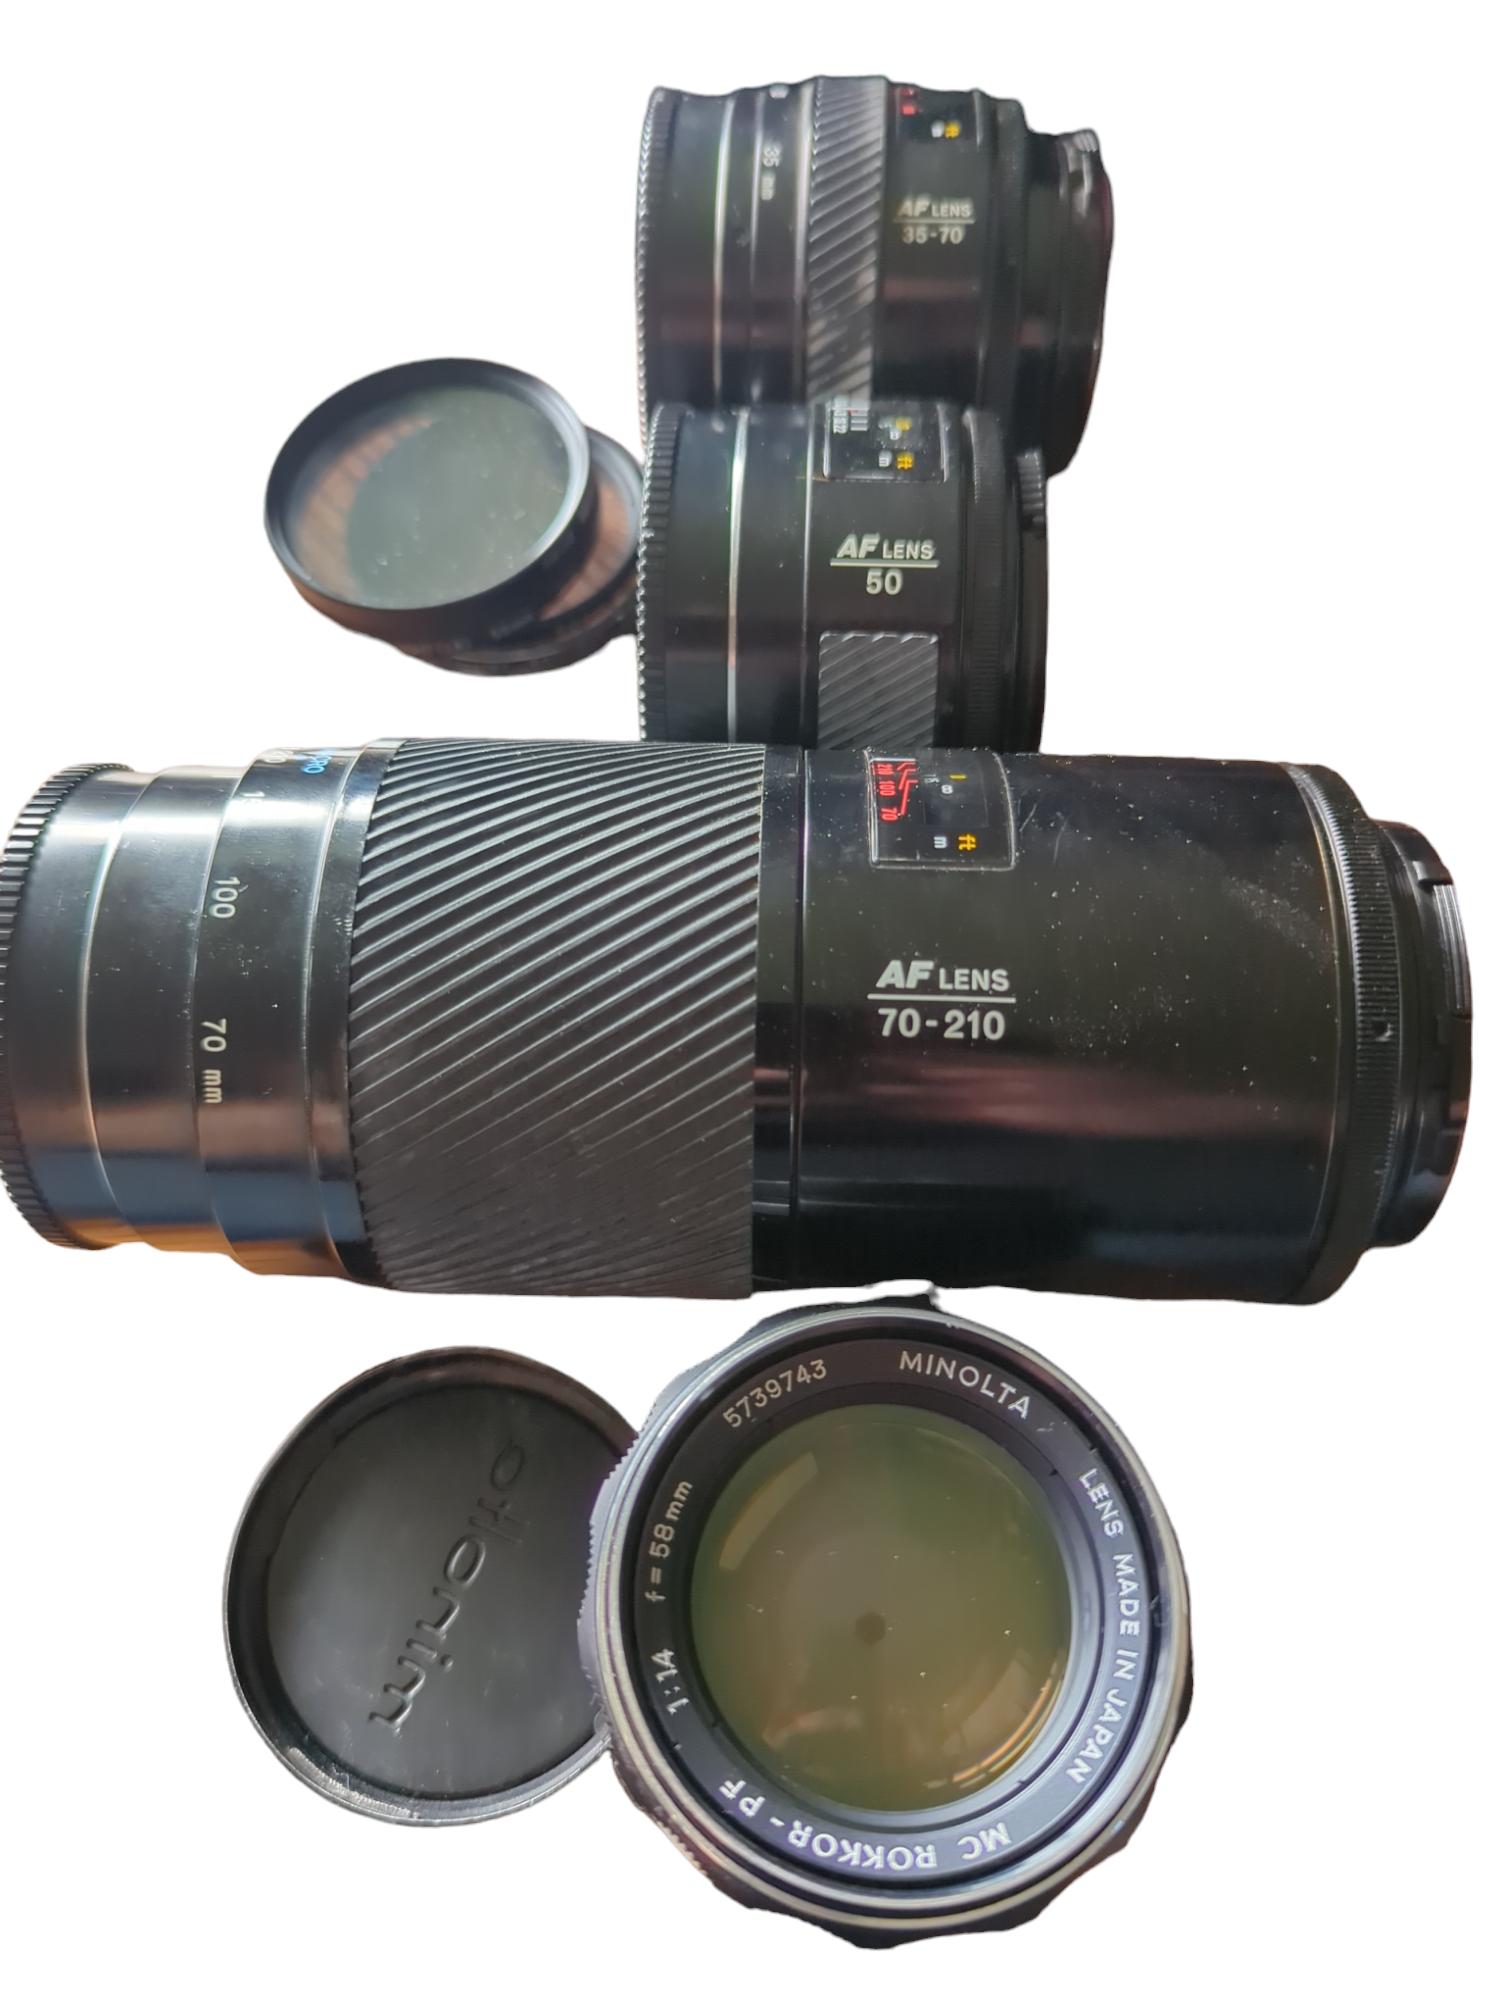 Minolta Maxxum 7000 SLR film camera bundle with four lenses